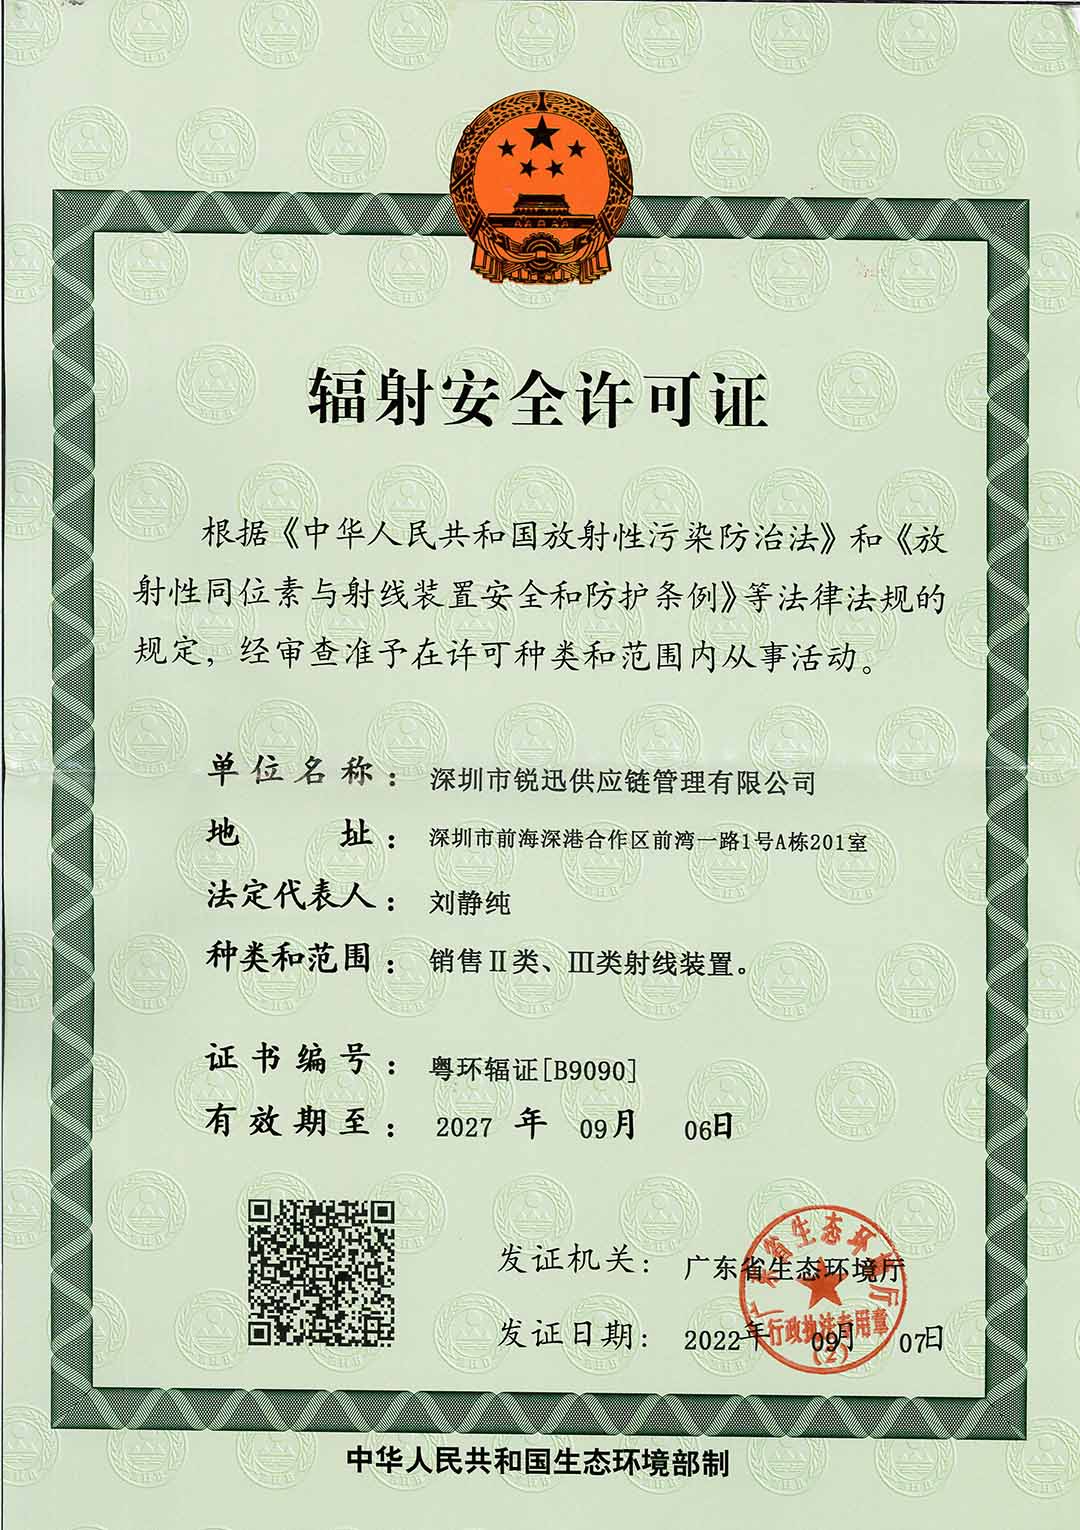 深圳市锐迅供应链管理有限公司